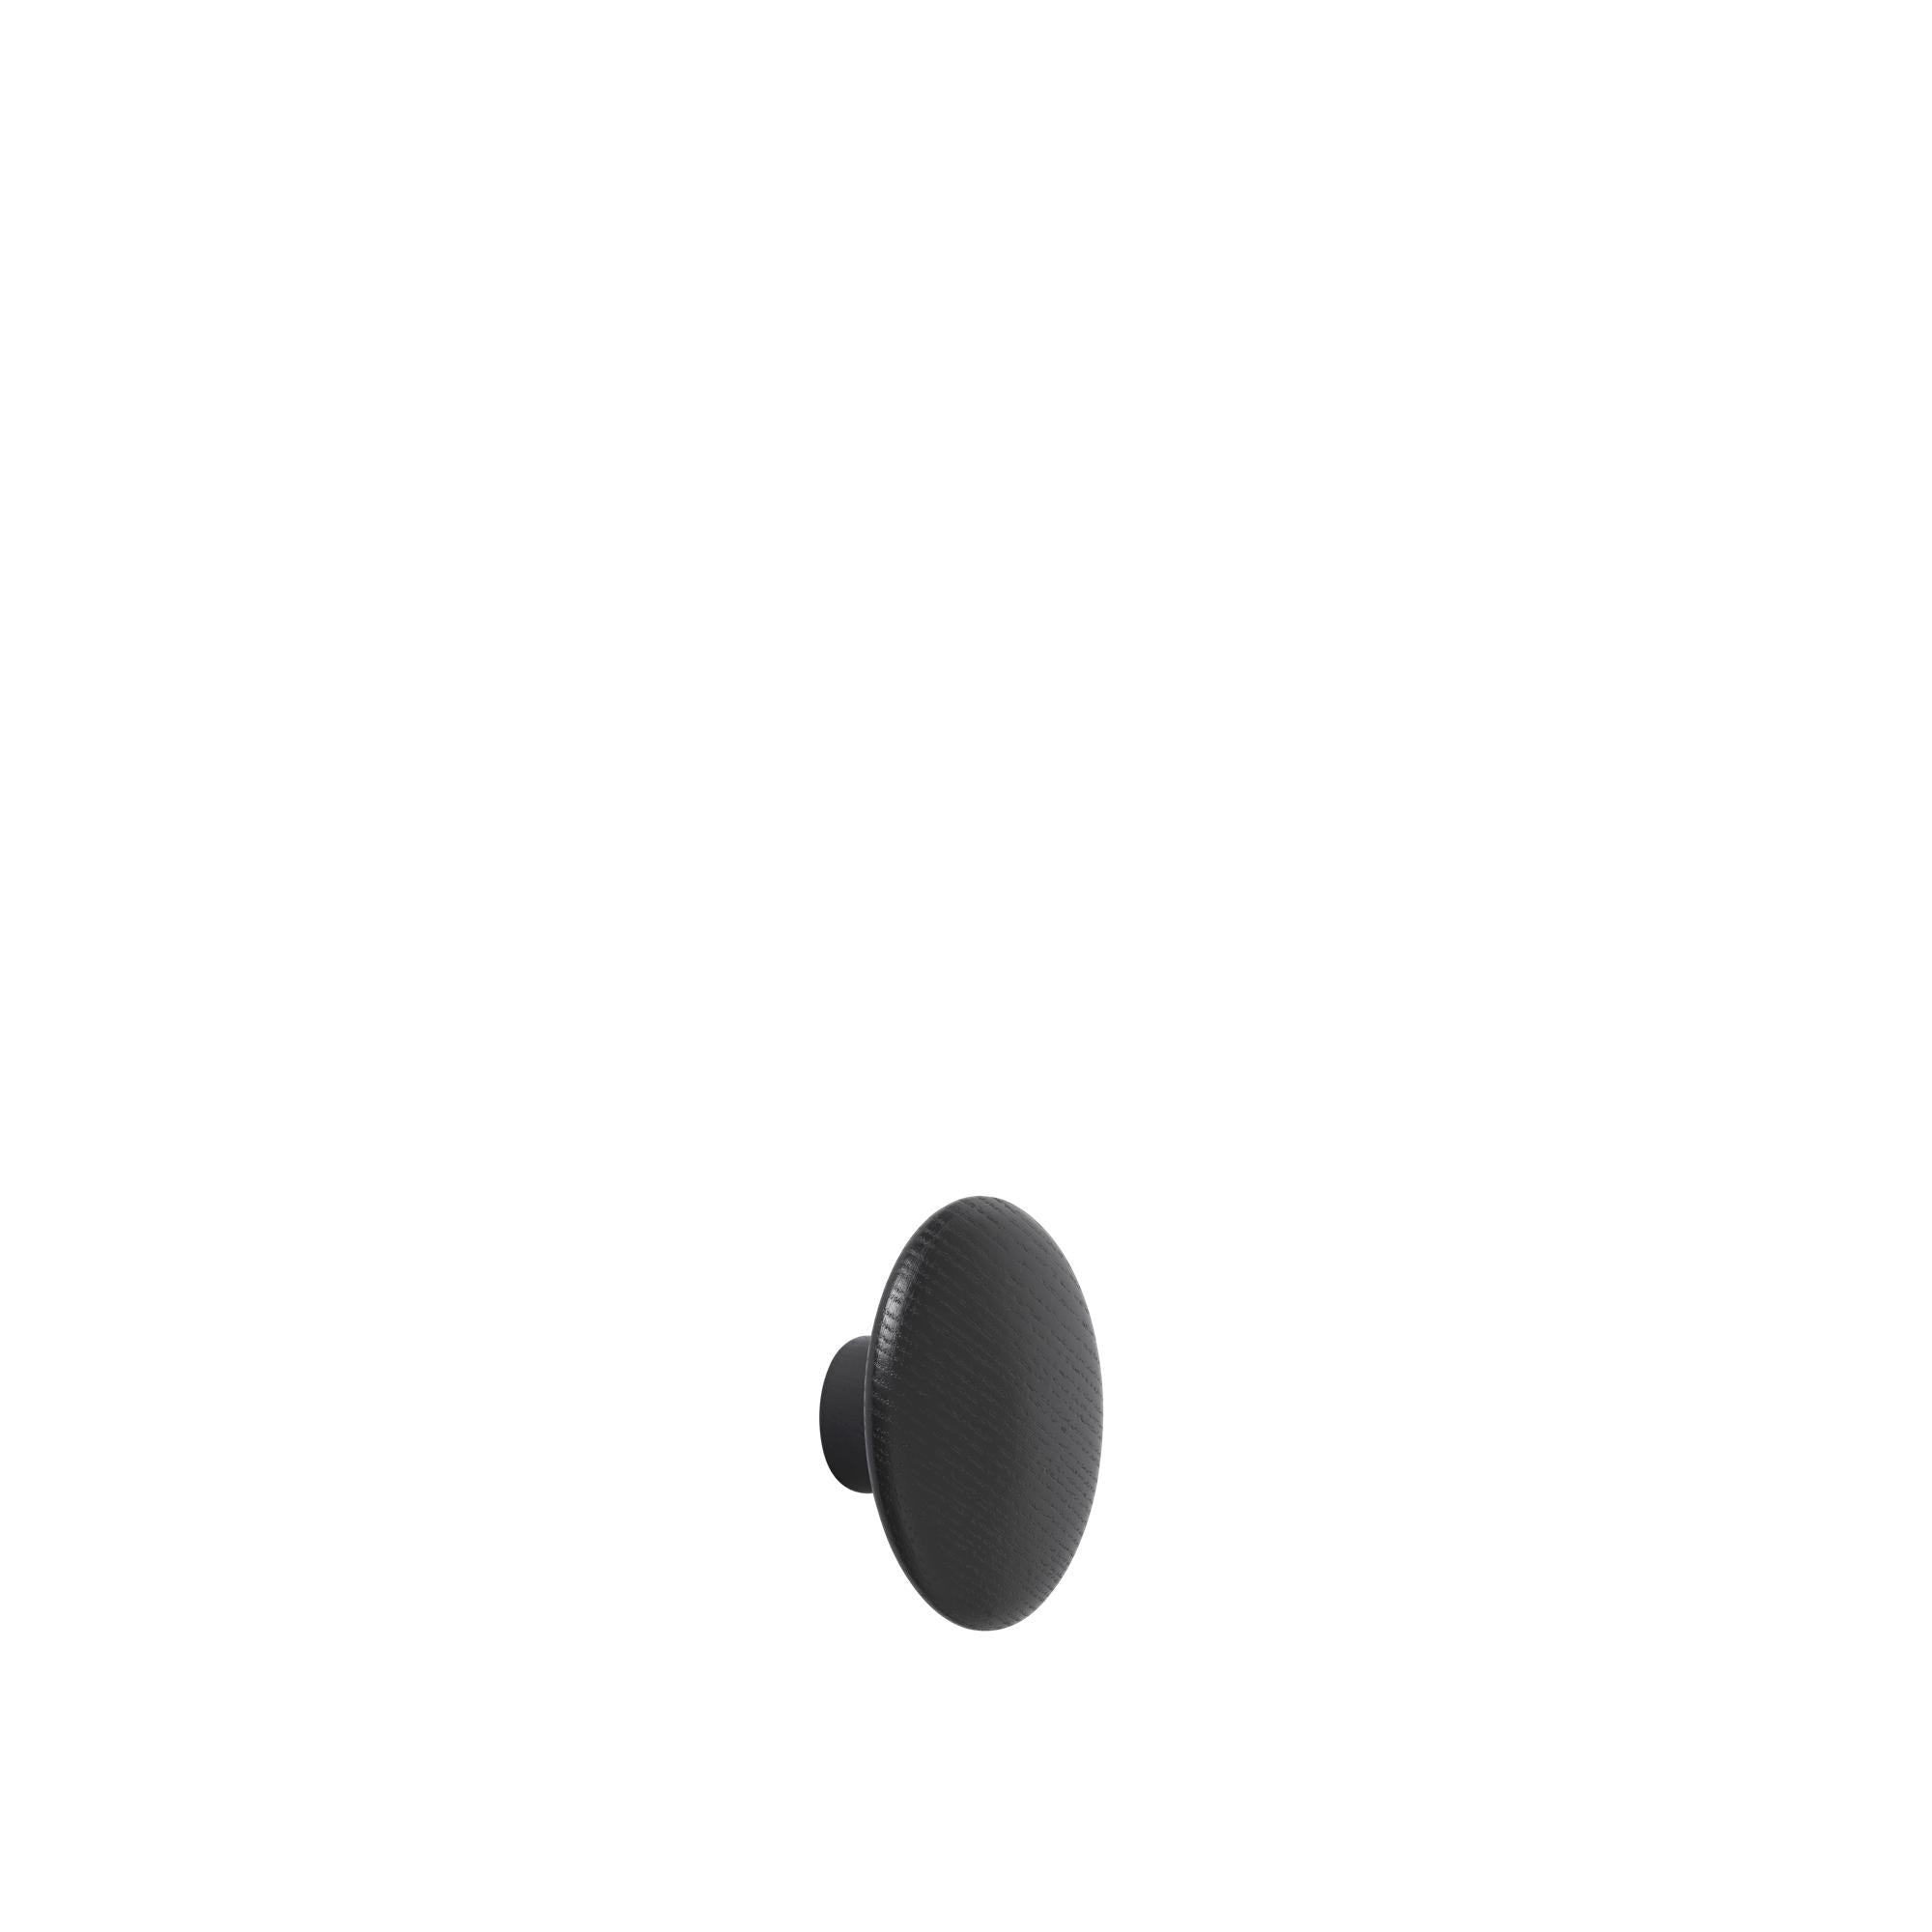 Muuto punktarinn krókur viðar svartur viði Ø 6,5 cm, svartur